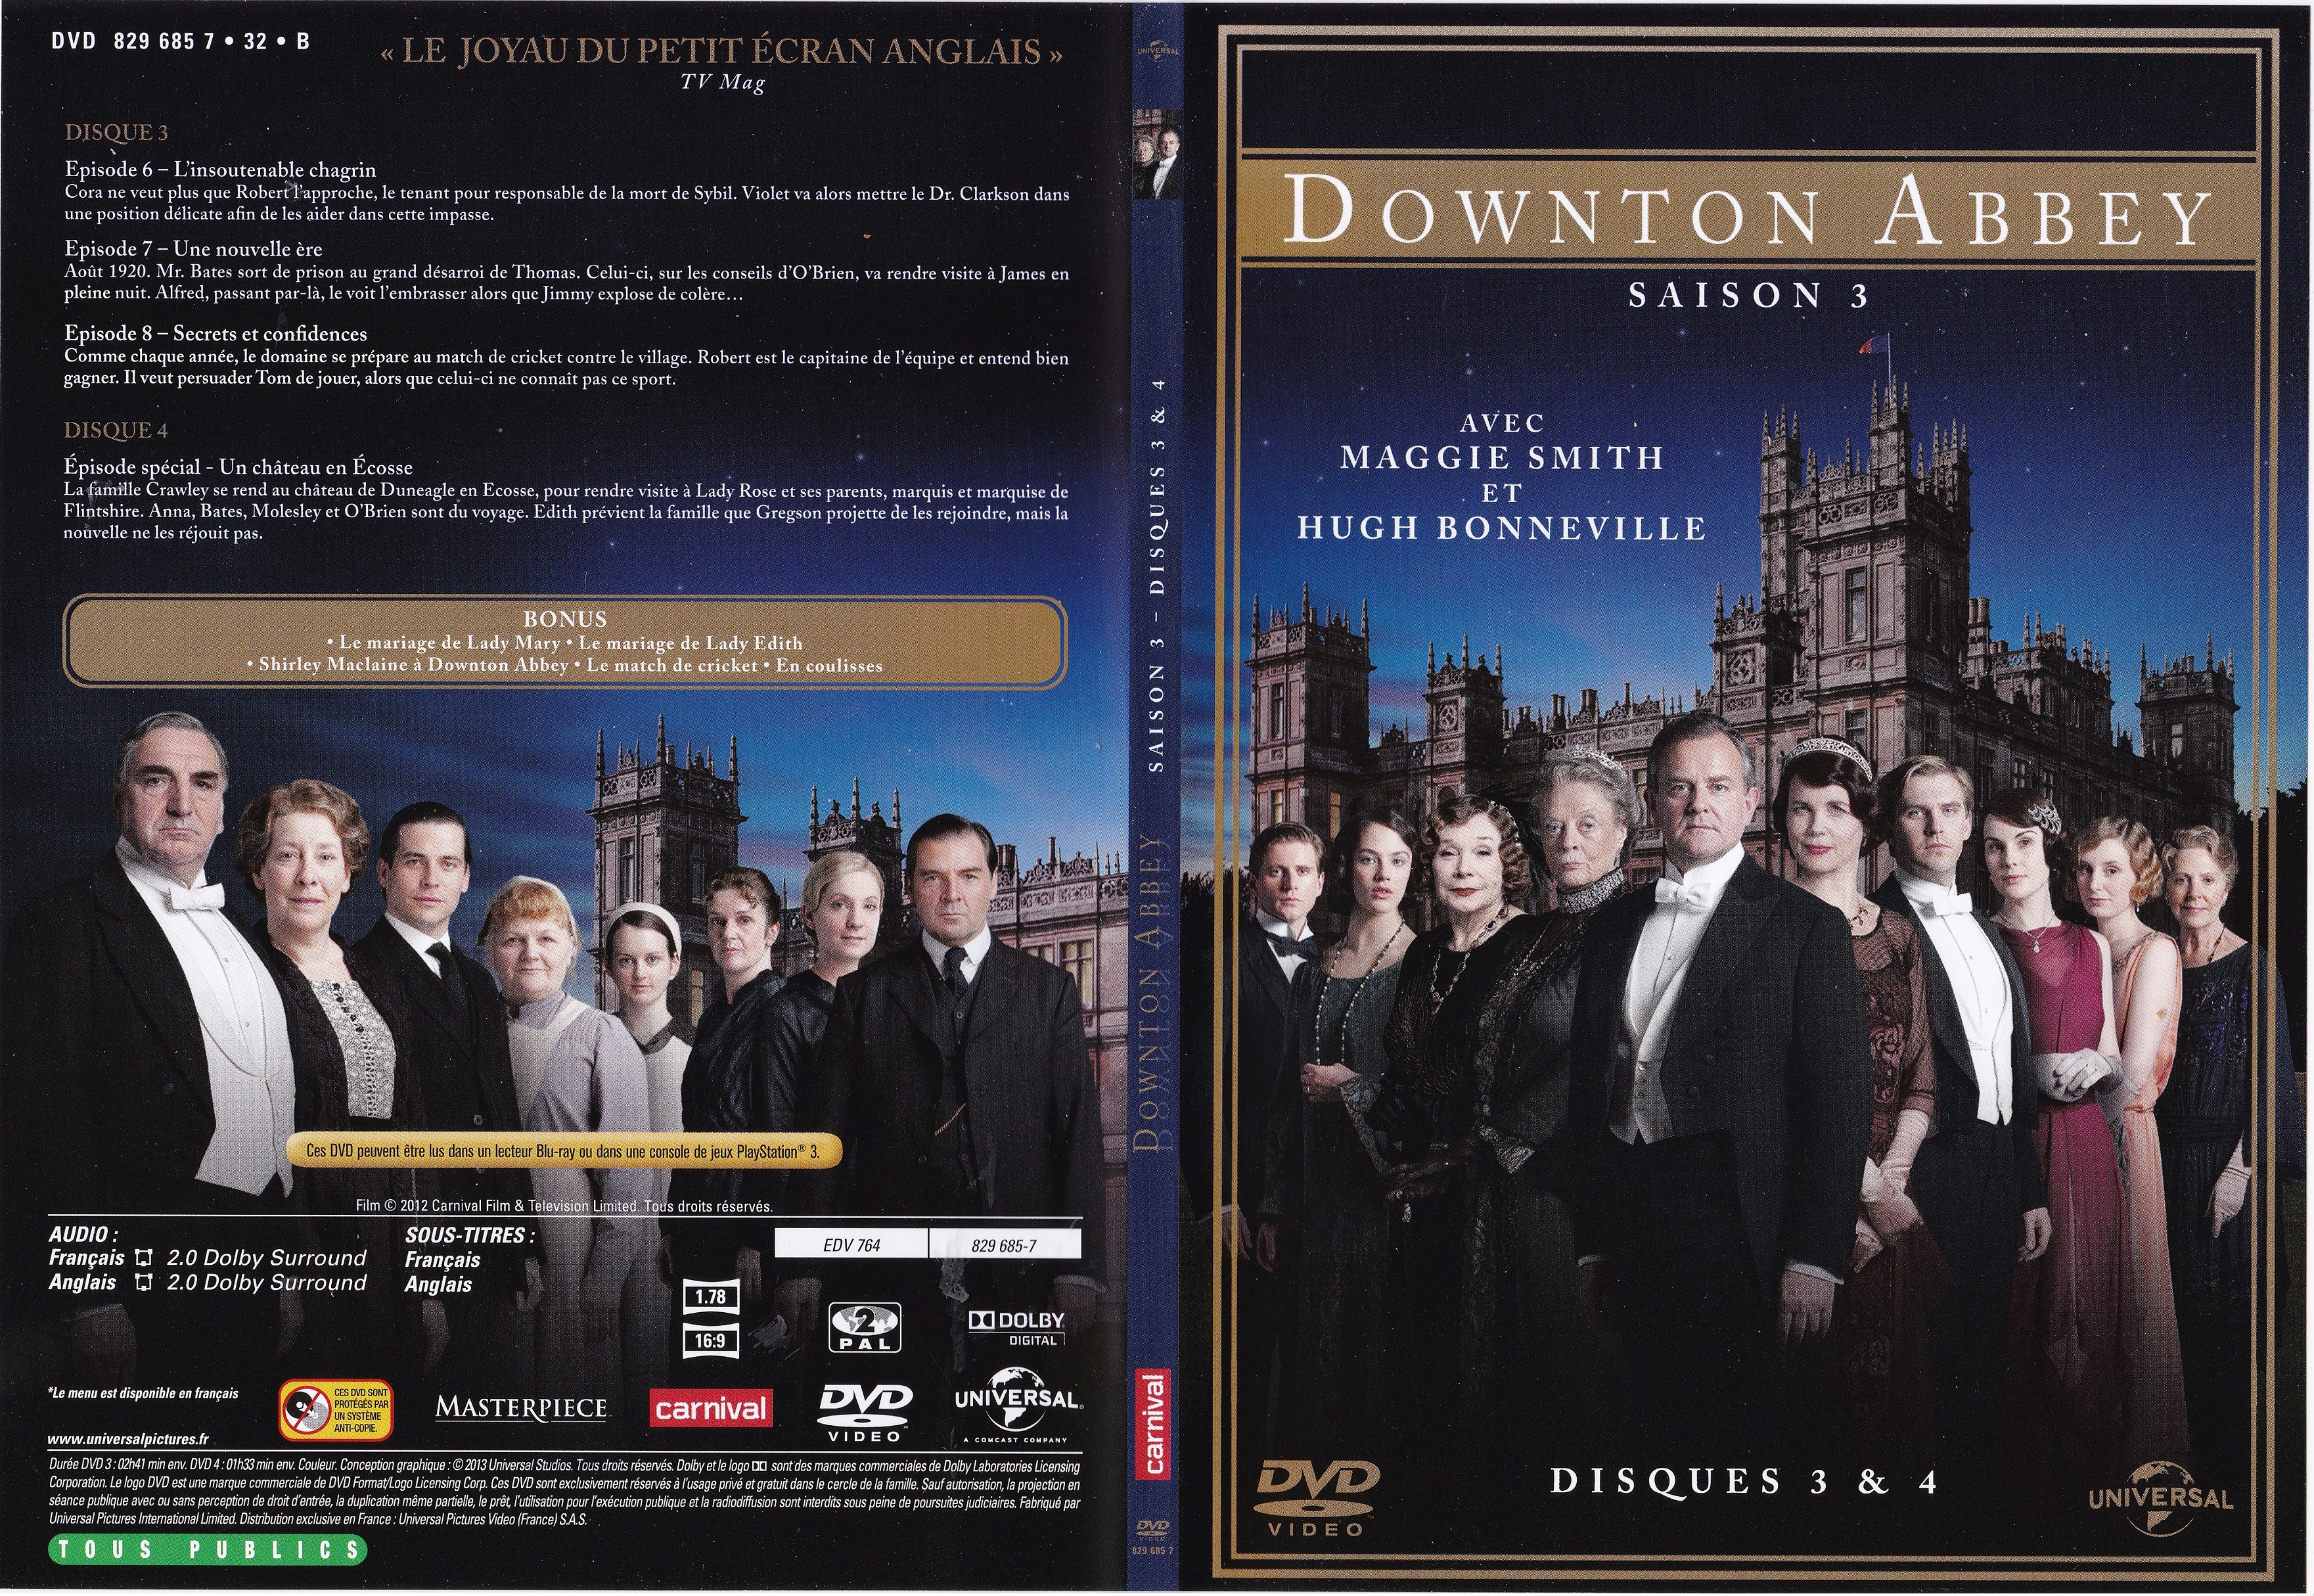 Jaquette DVD Downton Abbey Saison 3 Episodes 7  8 et Noel Ecosse